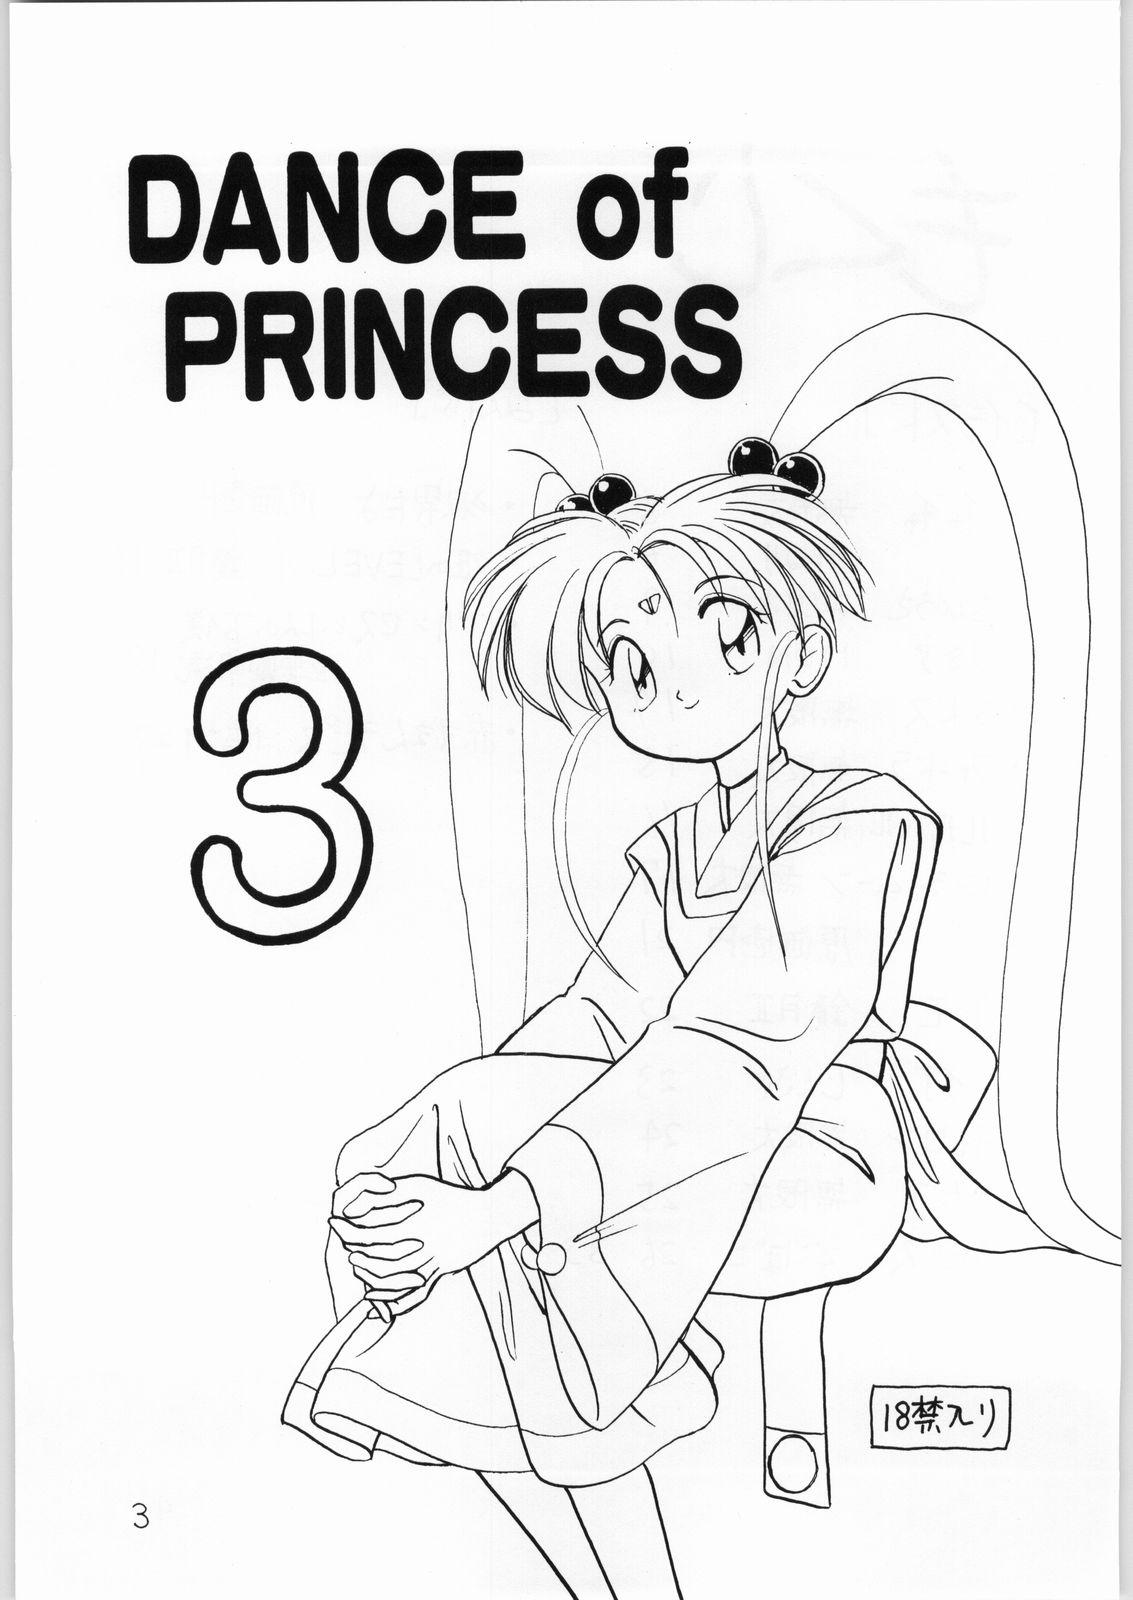 Eating Dance of Princess 3 - Sailor moon Tenchi muyo Akazukin cha cha Minky momo Ng knight lamune and 40 Tites - Page 2